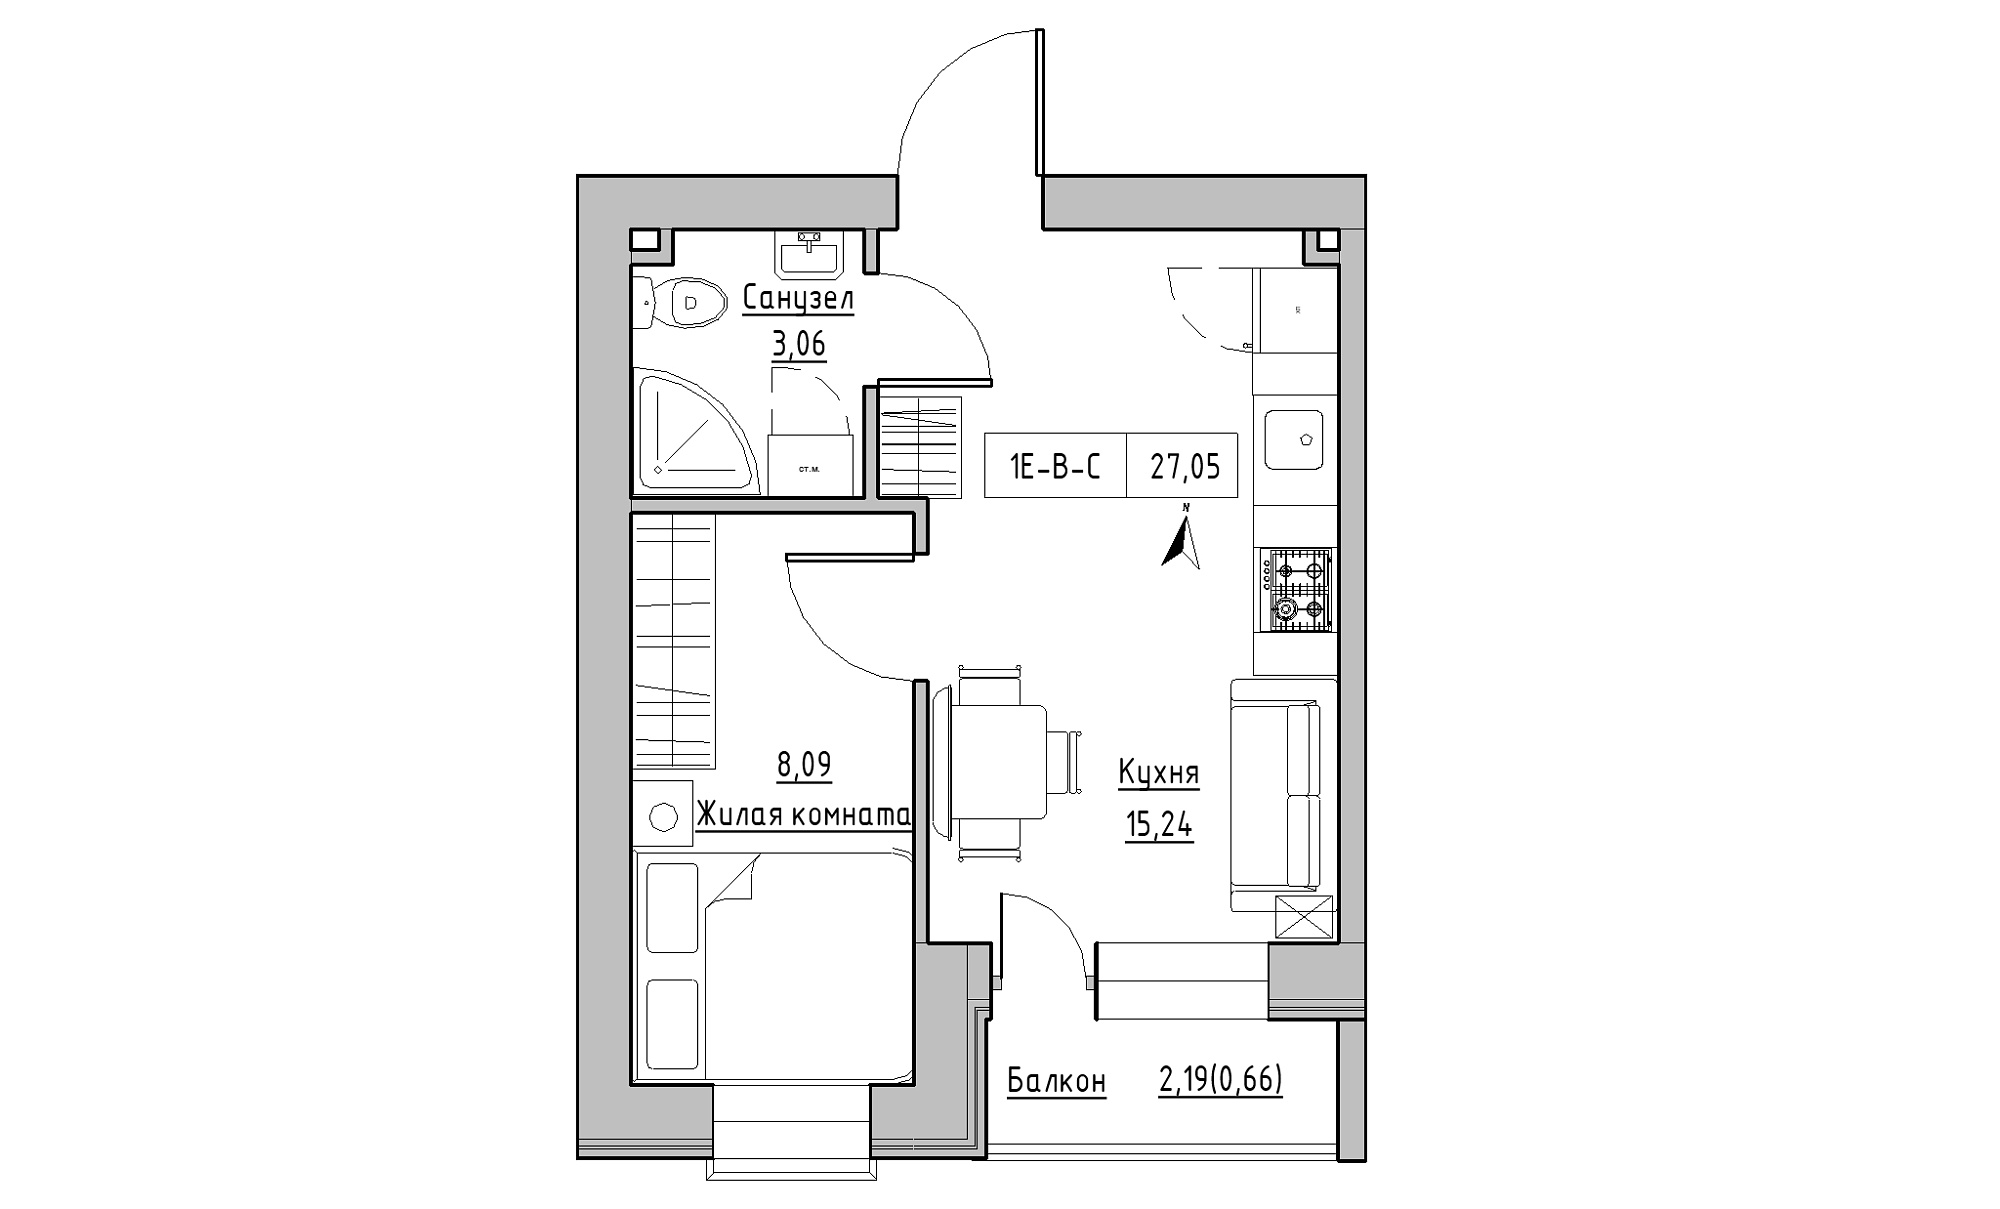 Планировка 1-к квартира площей 27.05м2, KS-016-05/0008.